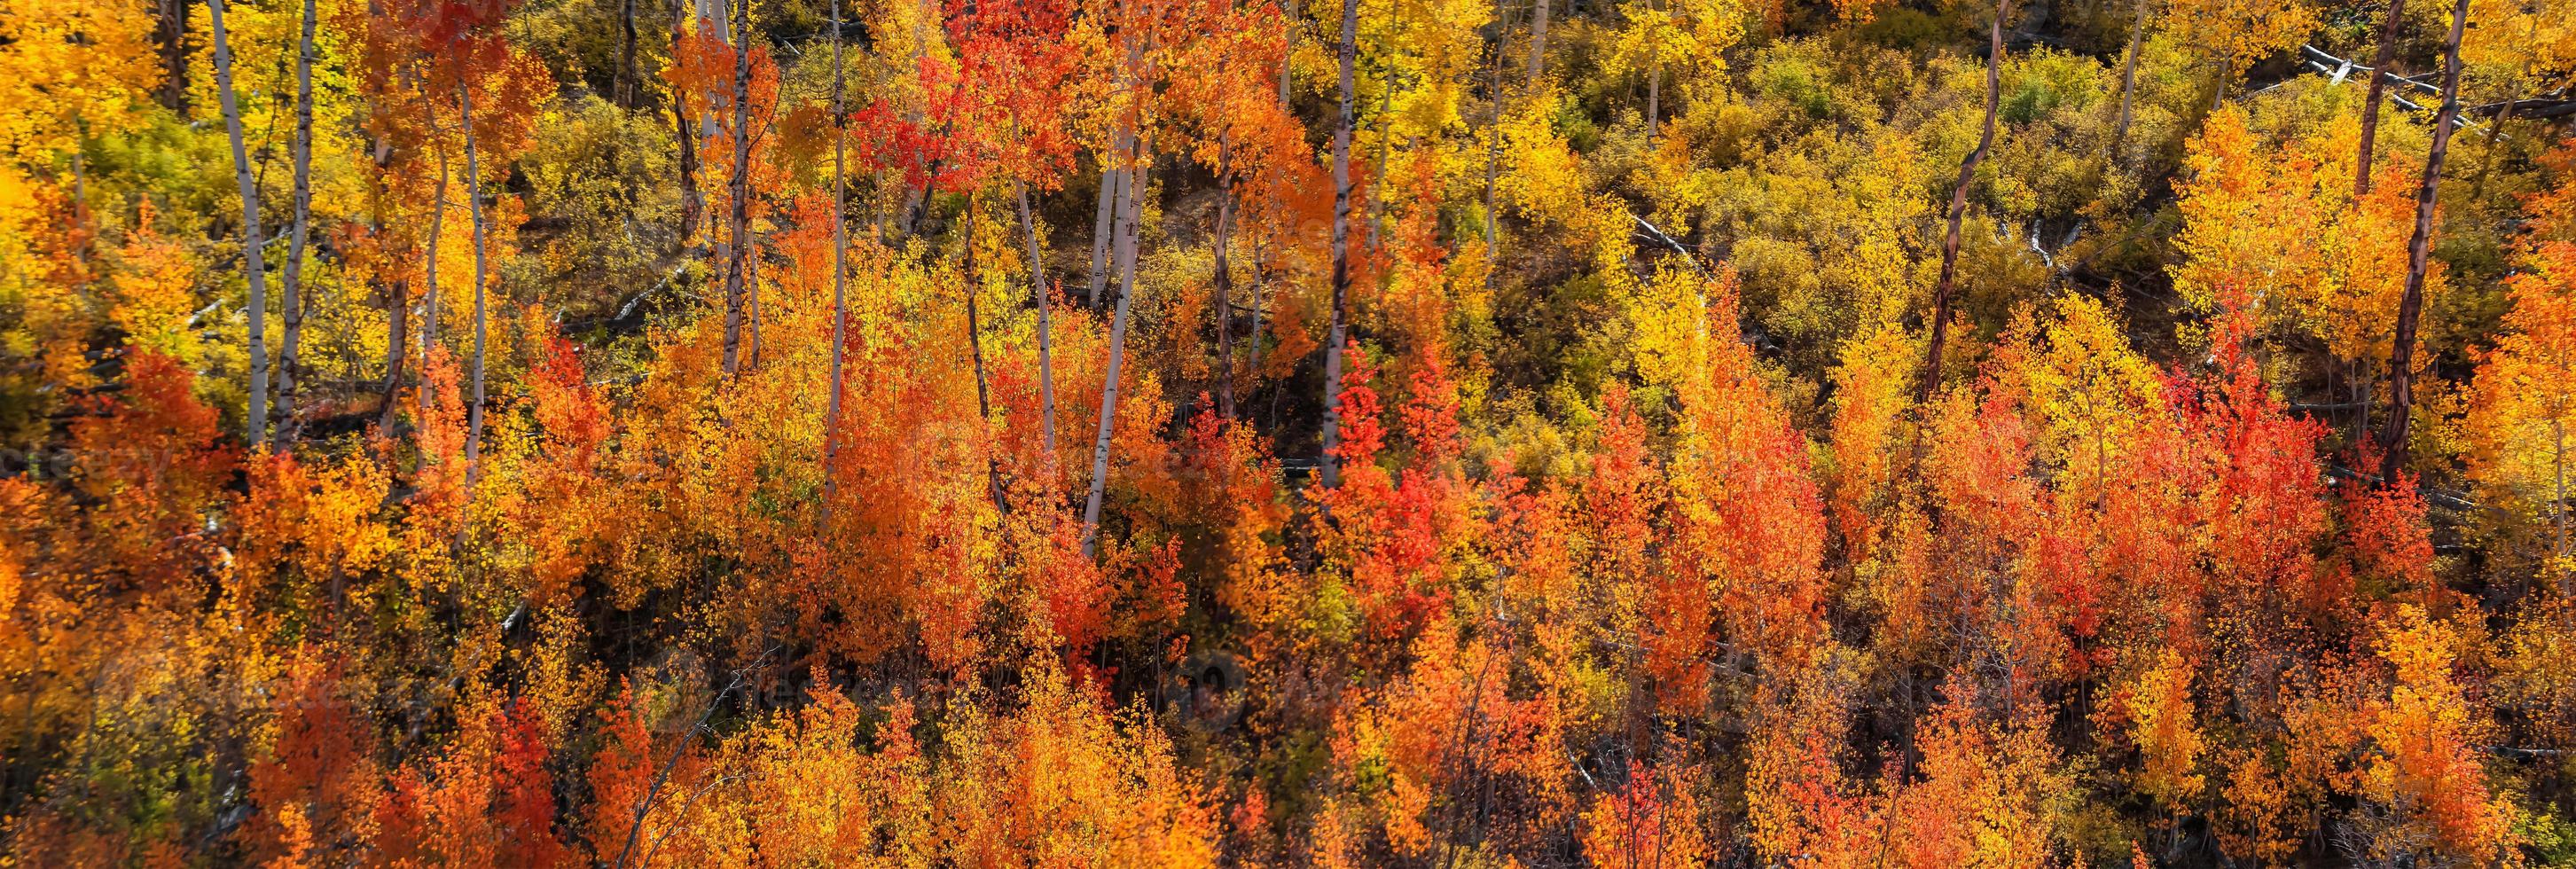 vue panoramique sur les arbres colorés de peupliers et de cotonniers au colorado photo